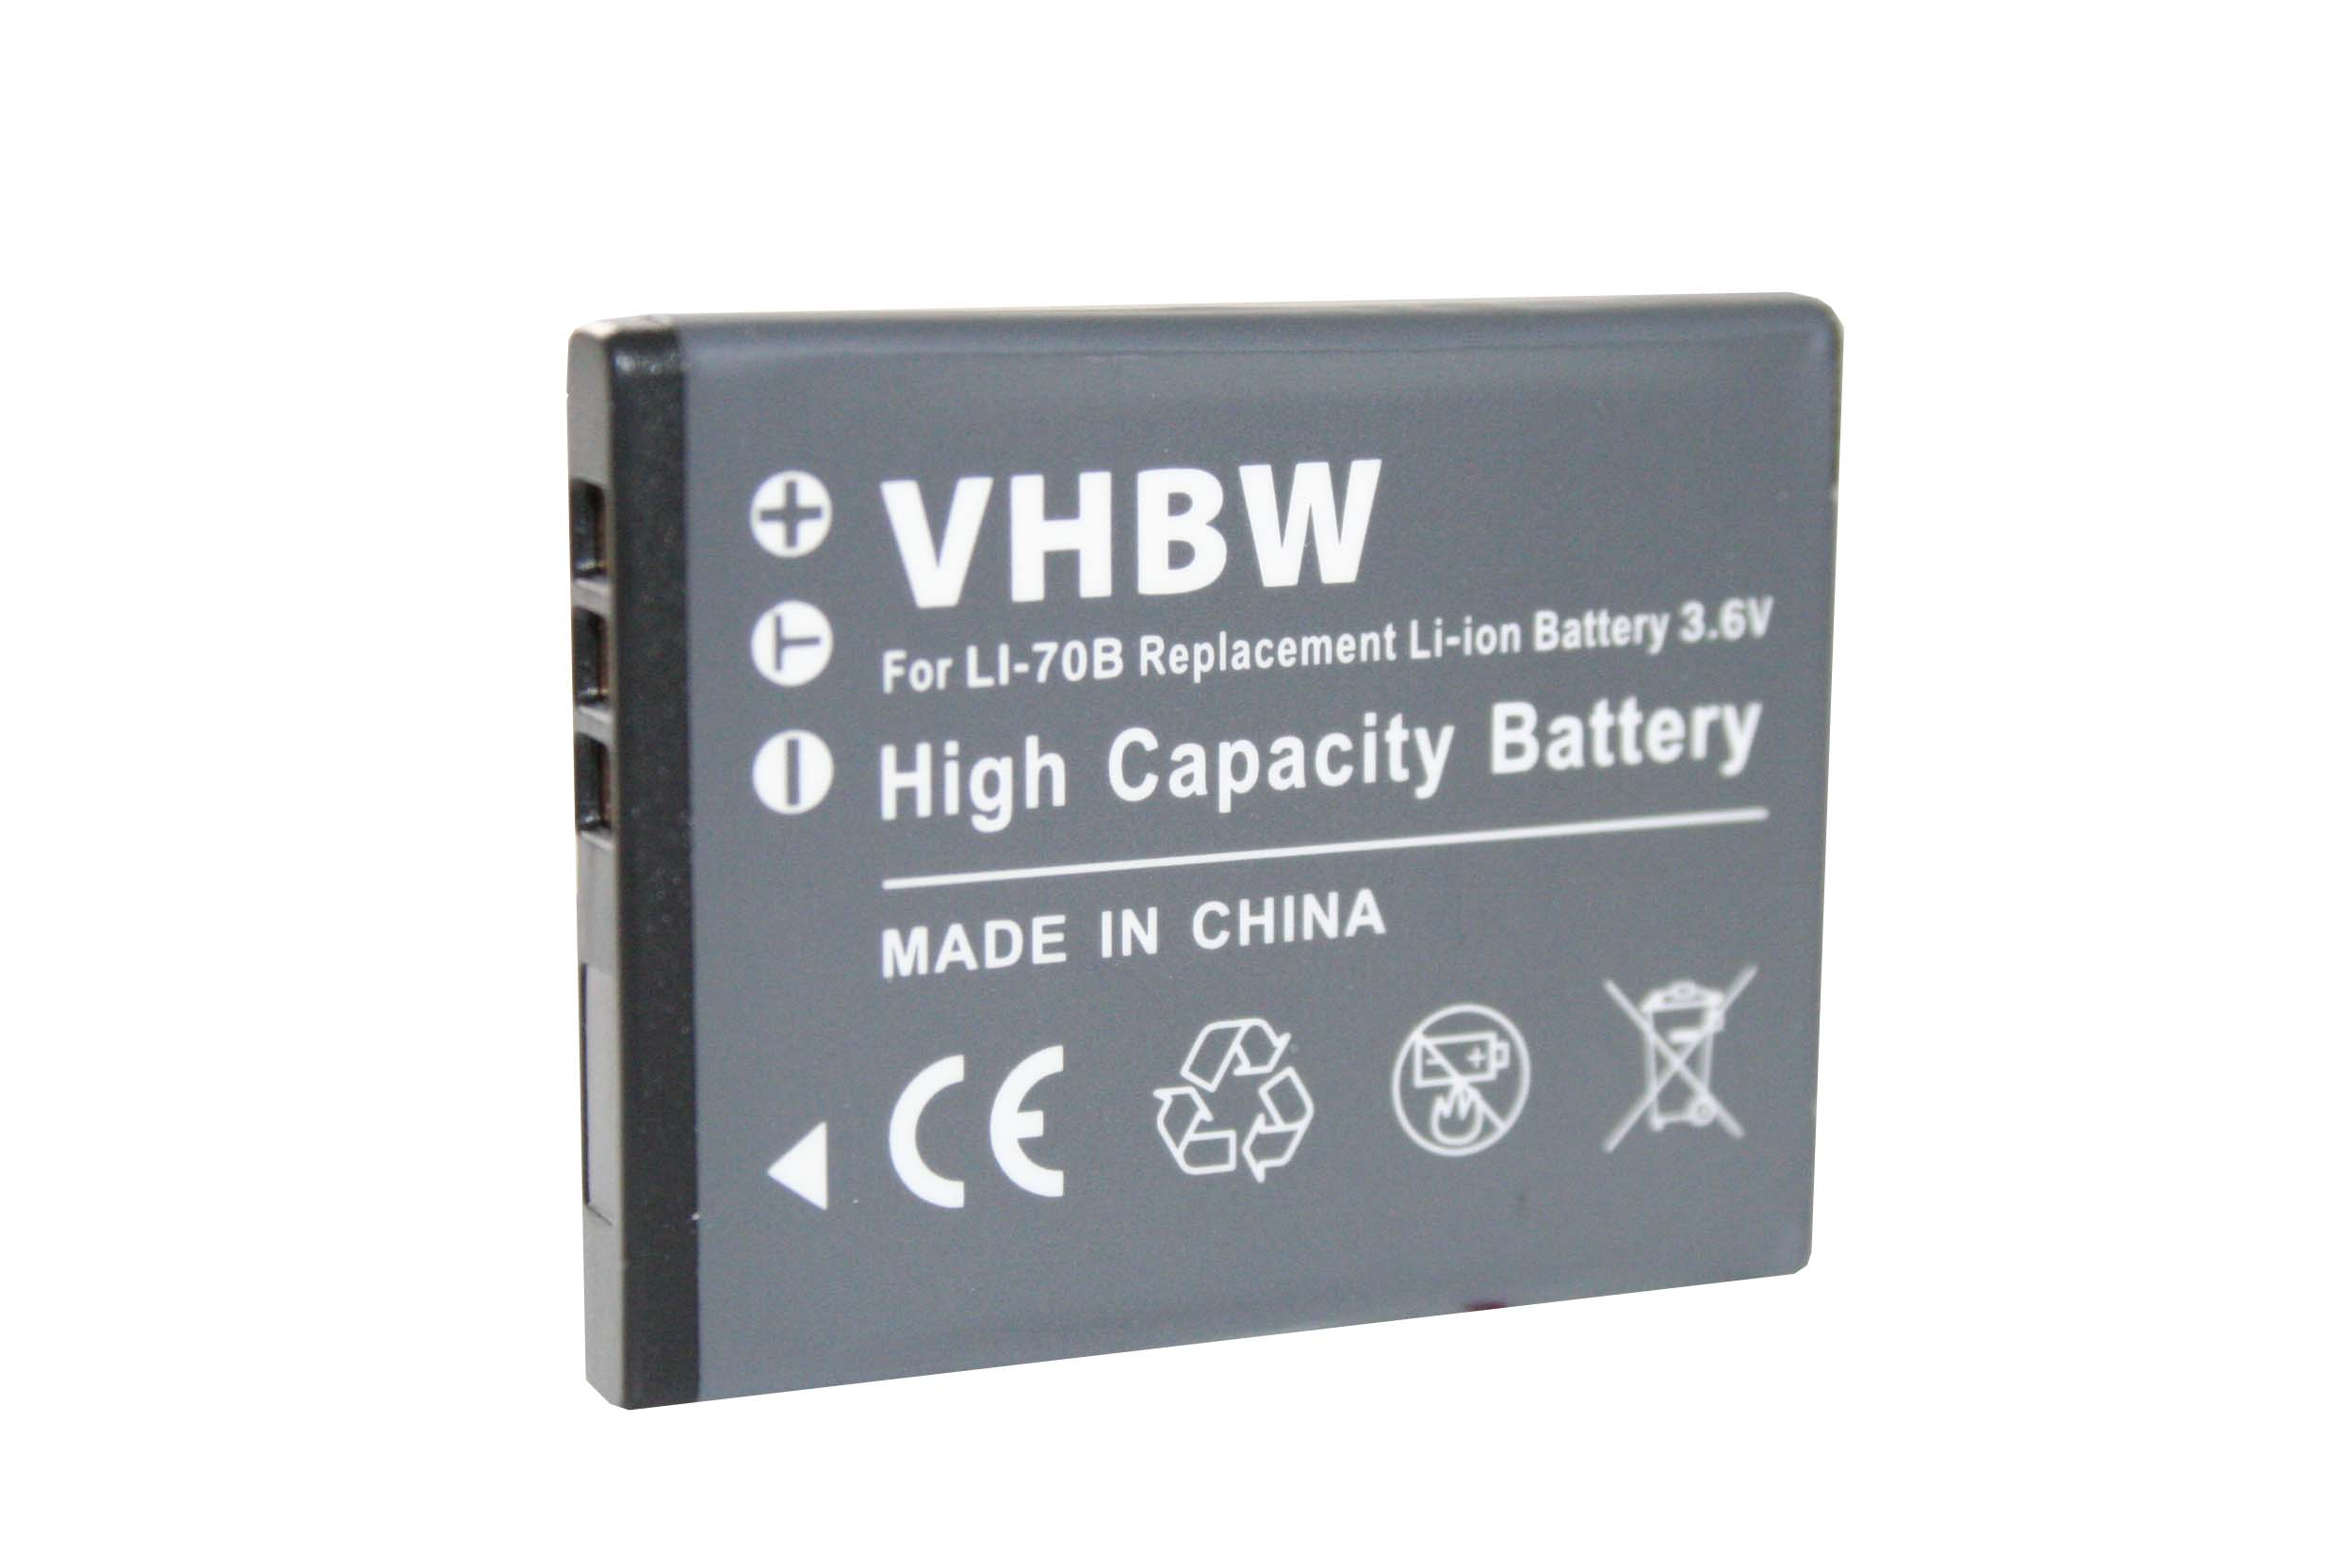 VHBW kompatibel mit Olympus VG160, X940, VG-160 Volt, - VG-150, Akku 3.6 Li-Ion Kamera, 500